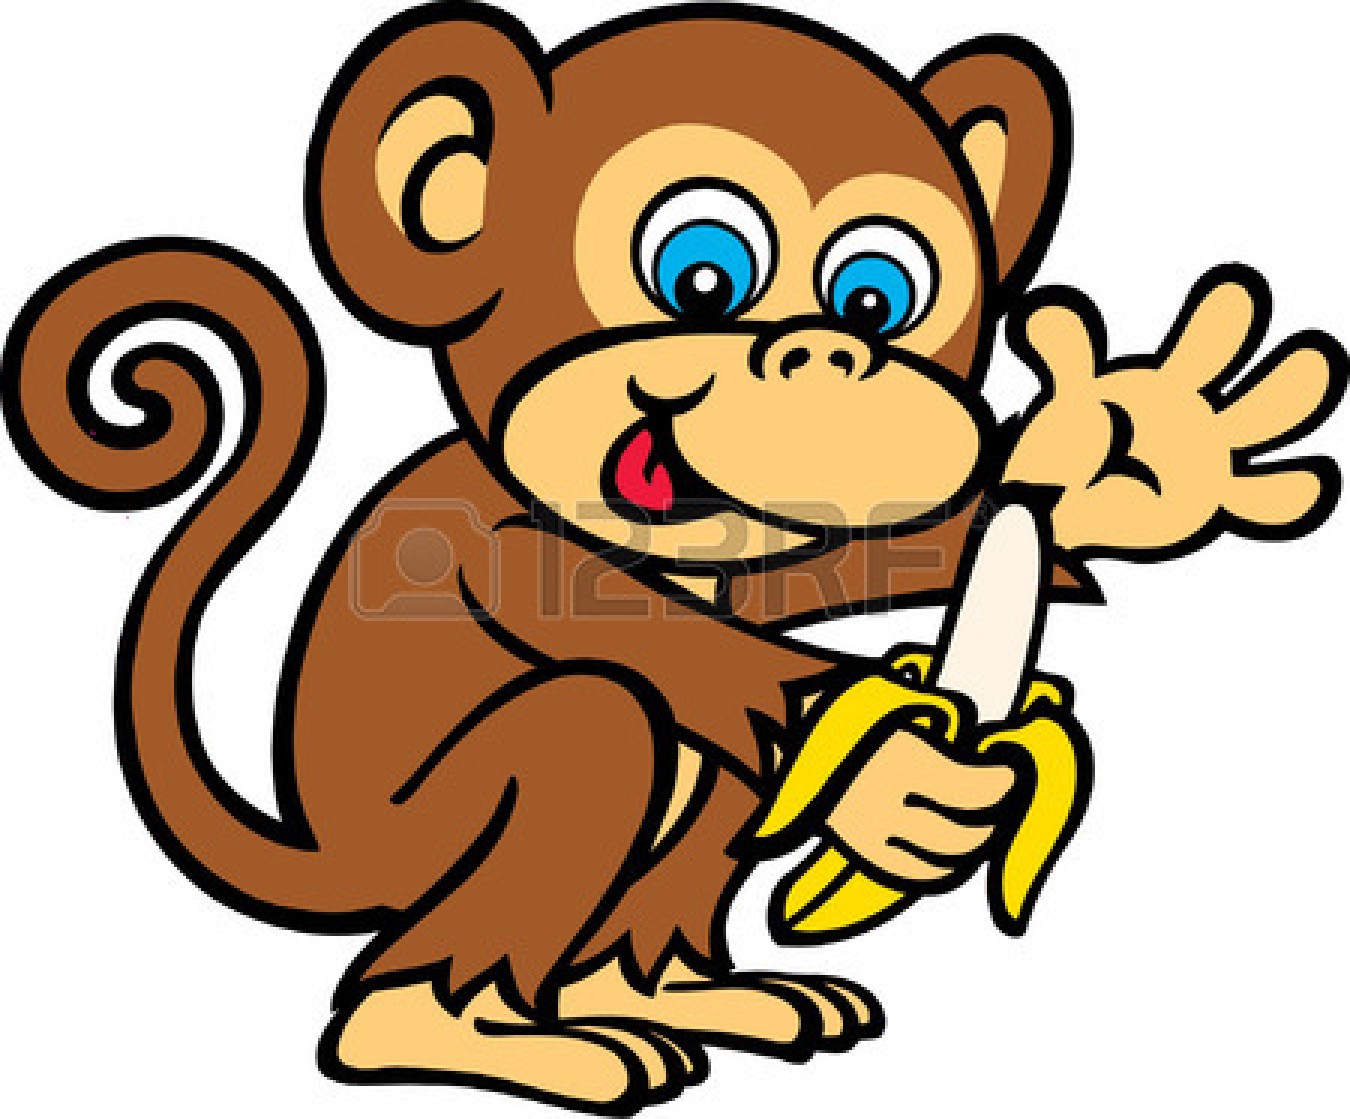 free clipart of cartoon monkeys - photo #20